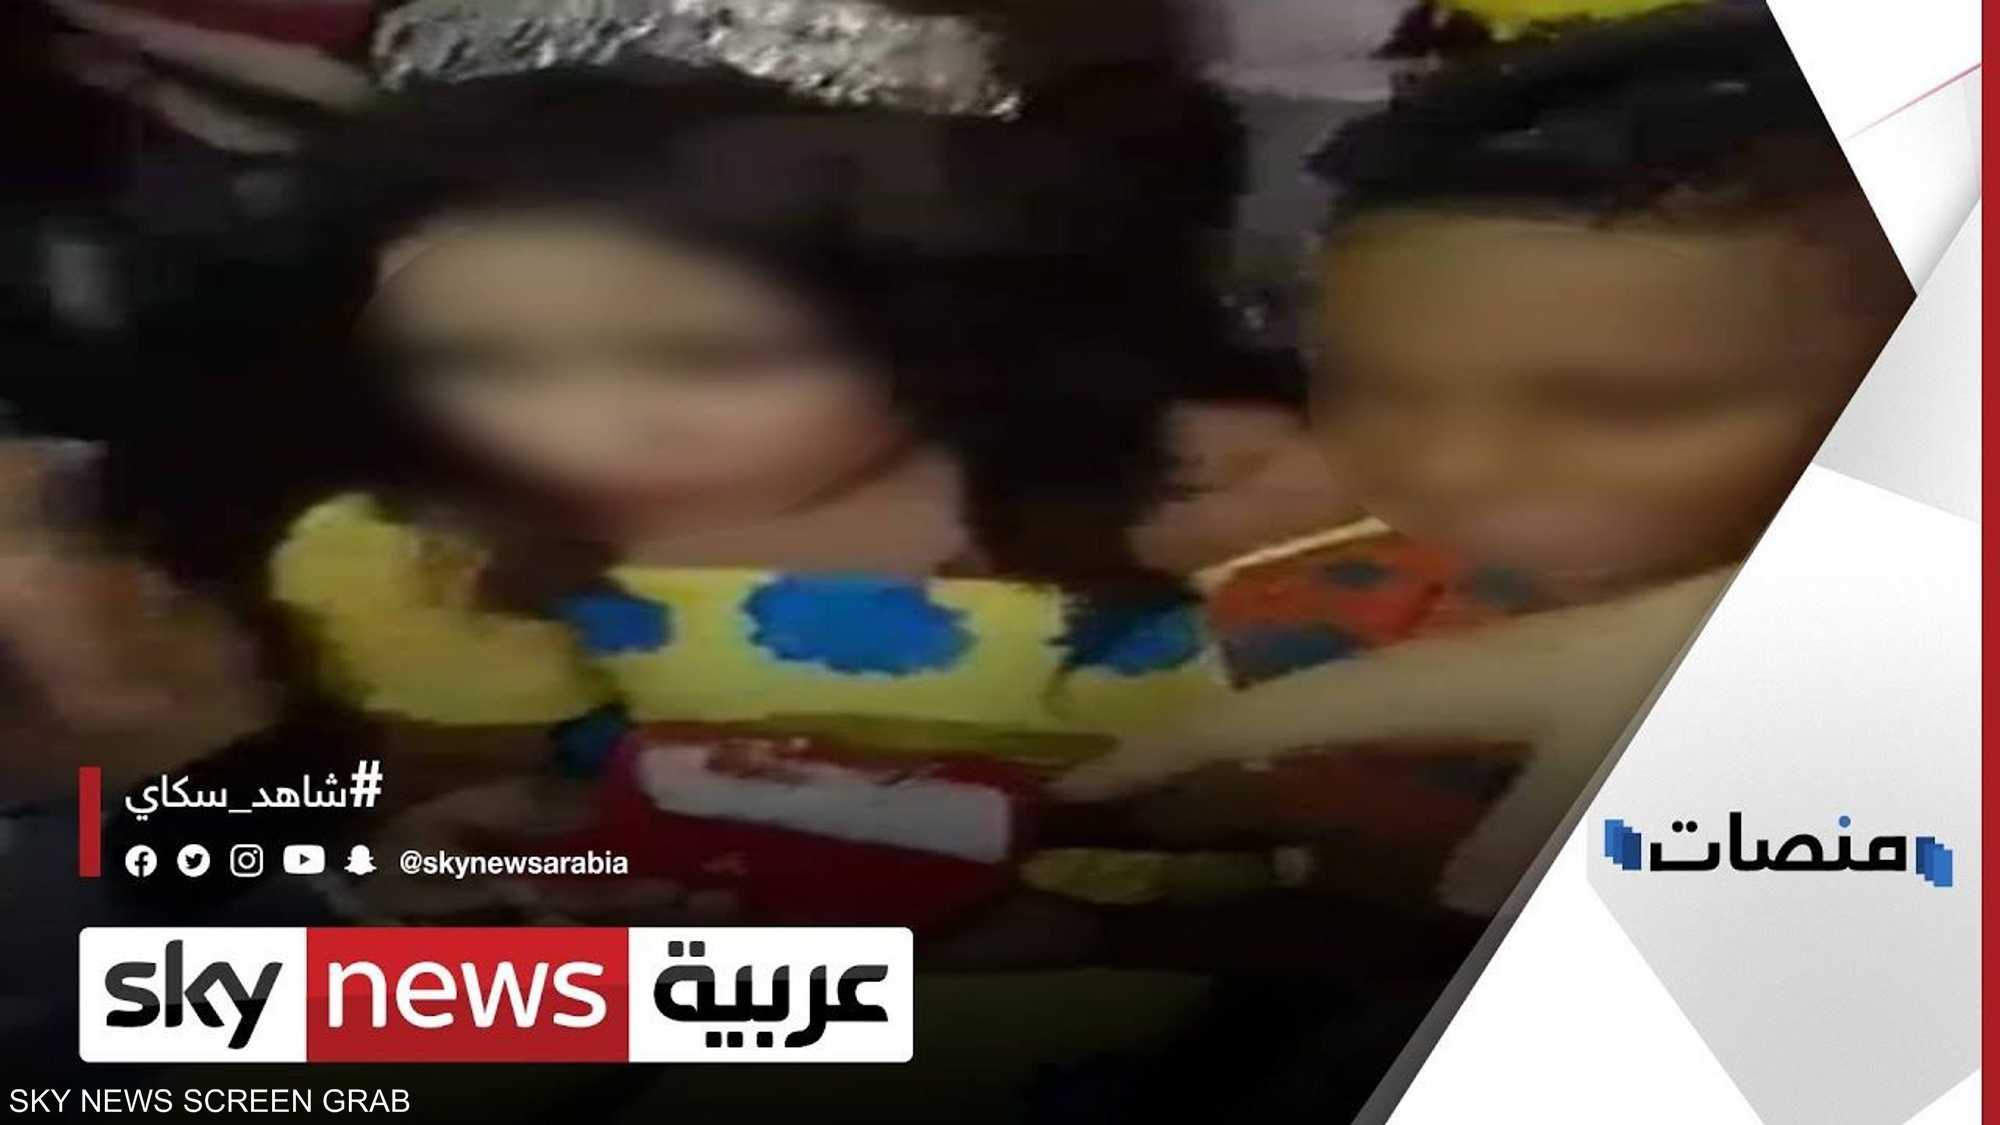 السلطات تتدخل بعد فيديو خطوبة طفلين بالقاهرة